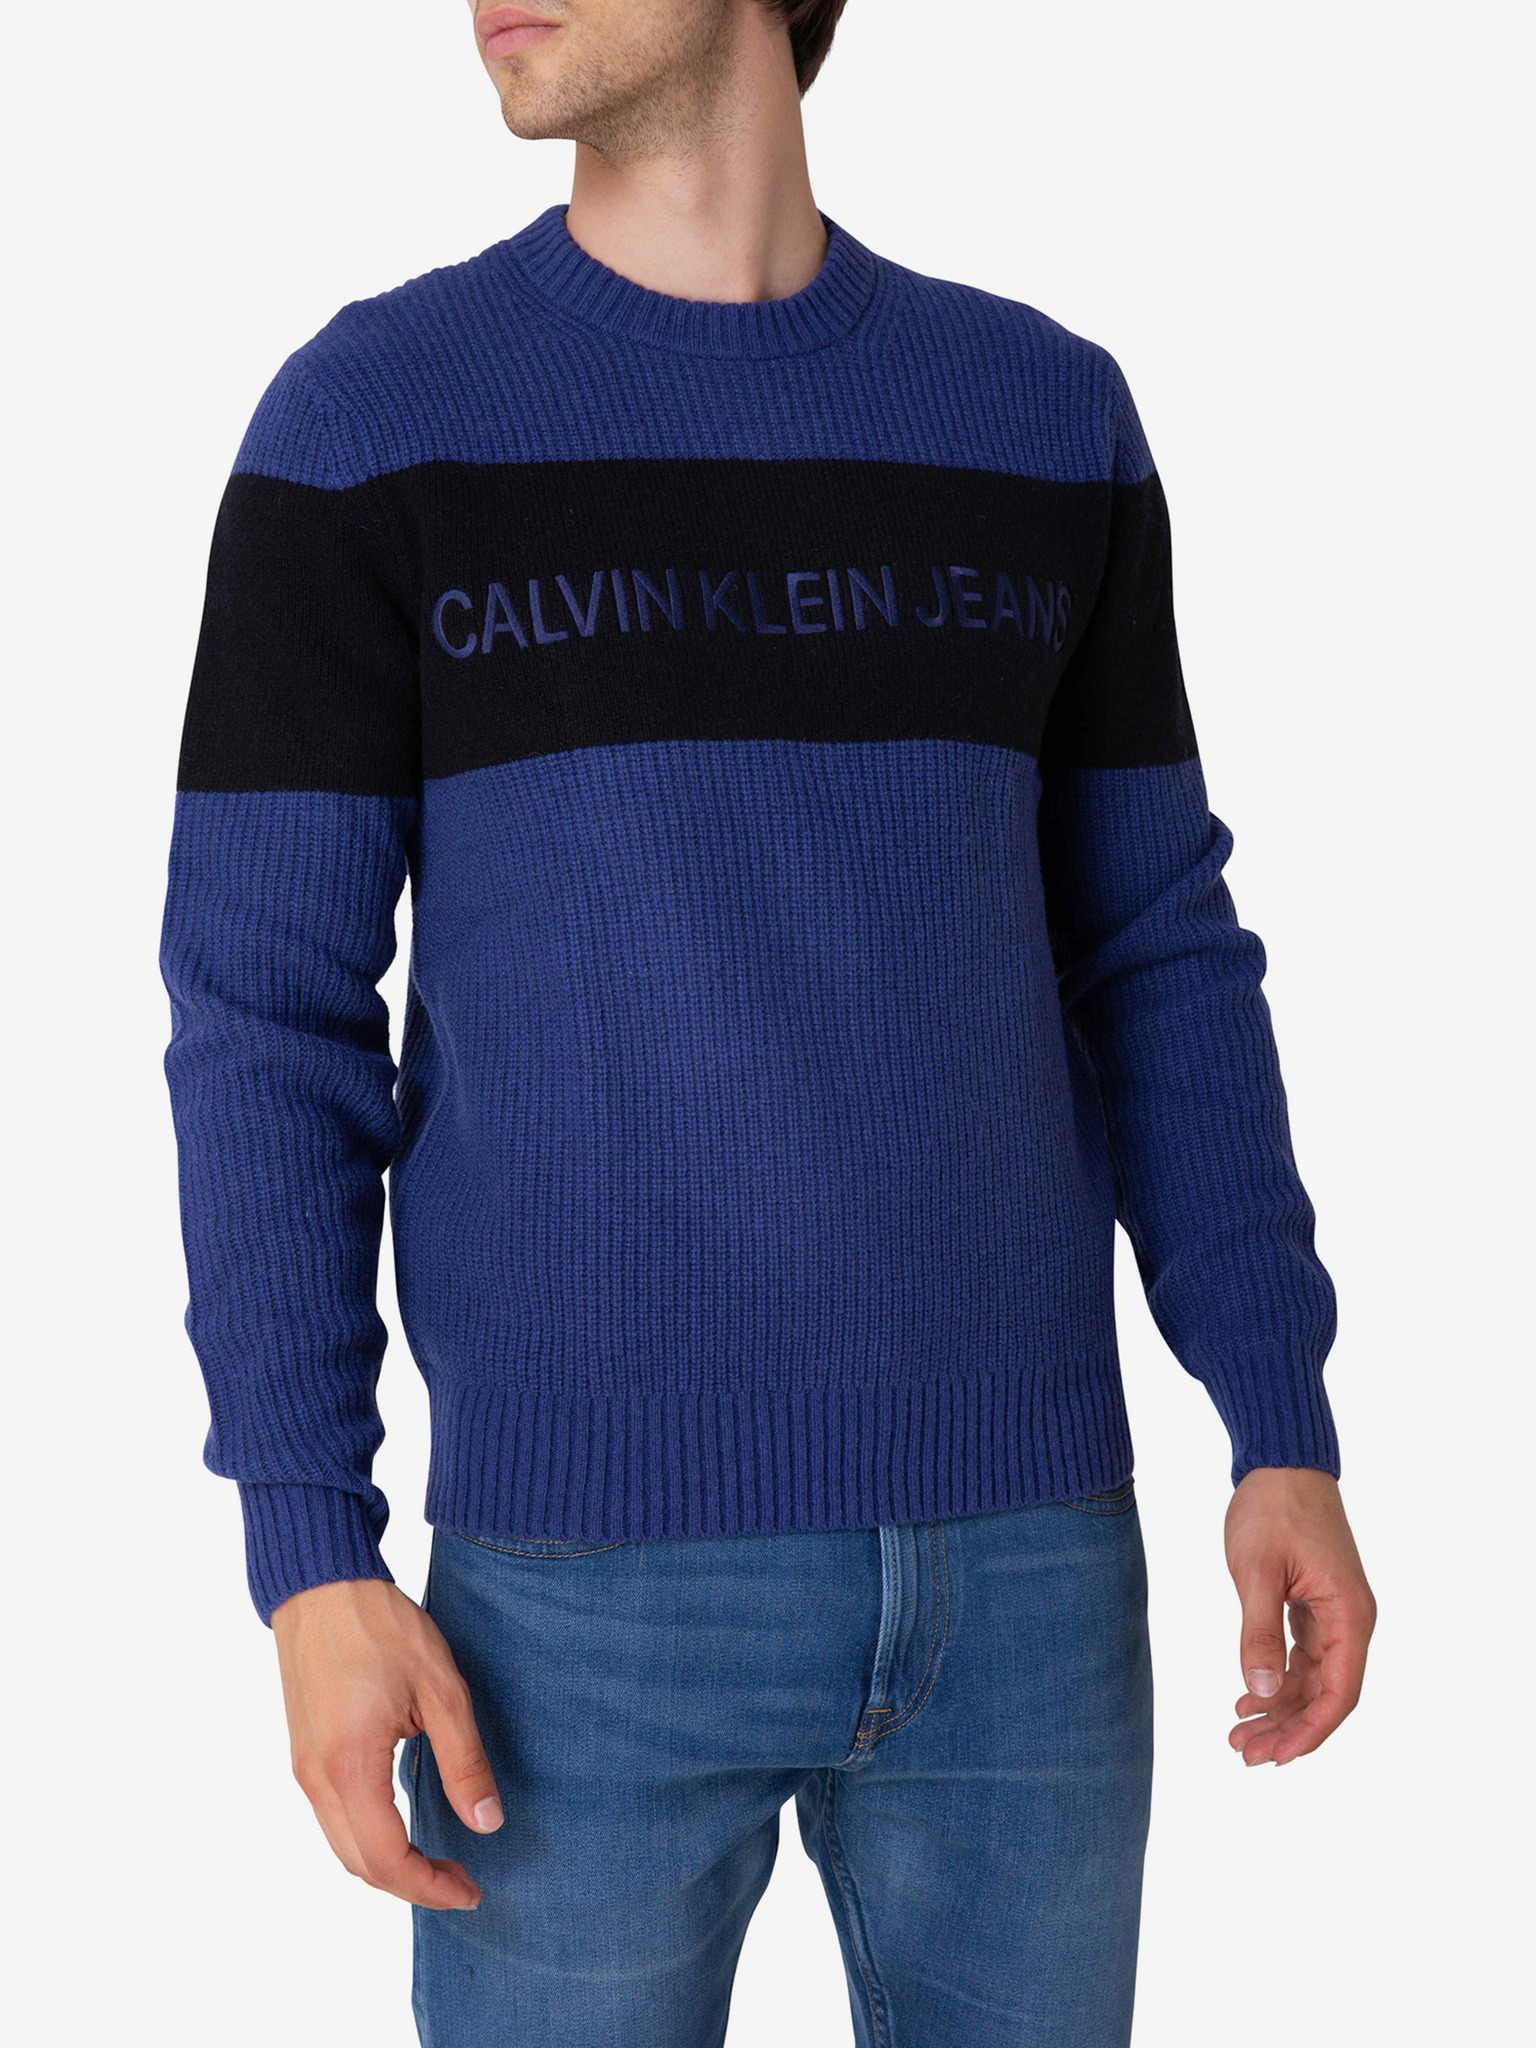 motto vergaan Vergemakkelijken Calvin Klein - Sweater Bibloo.com